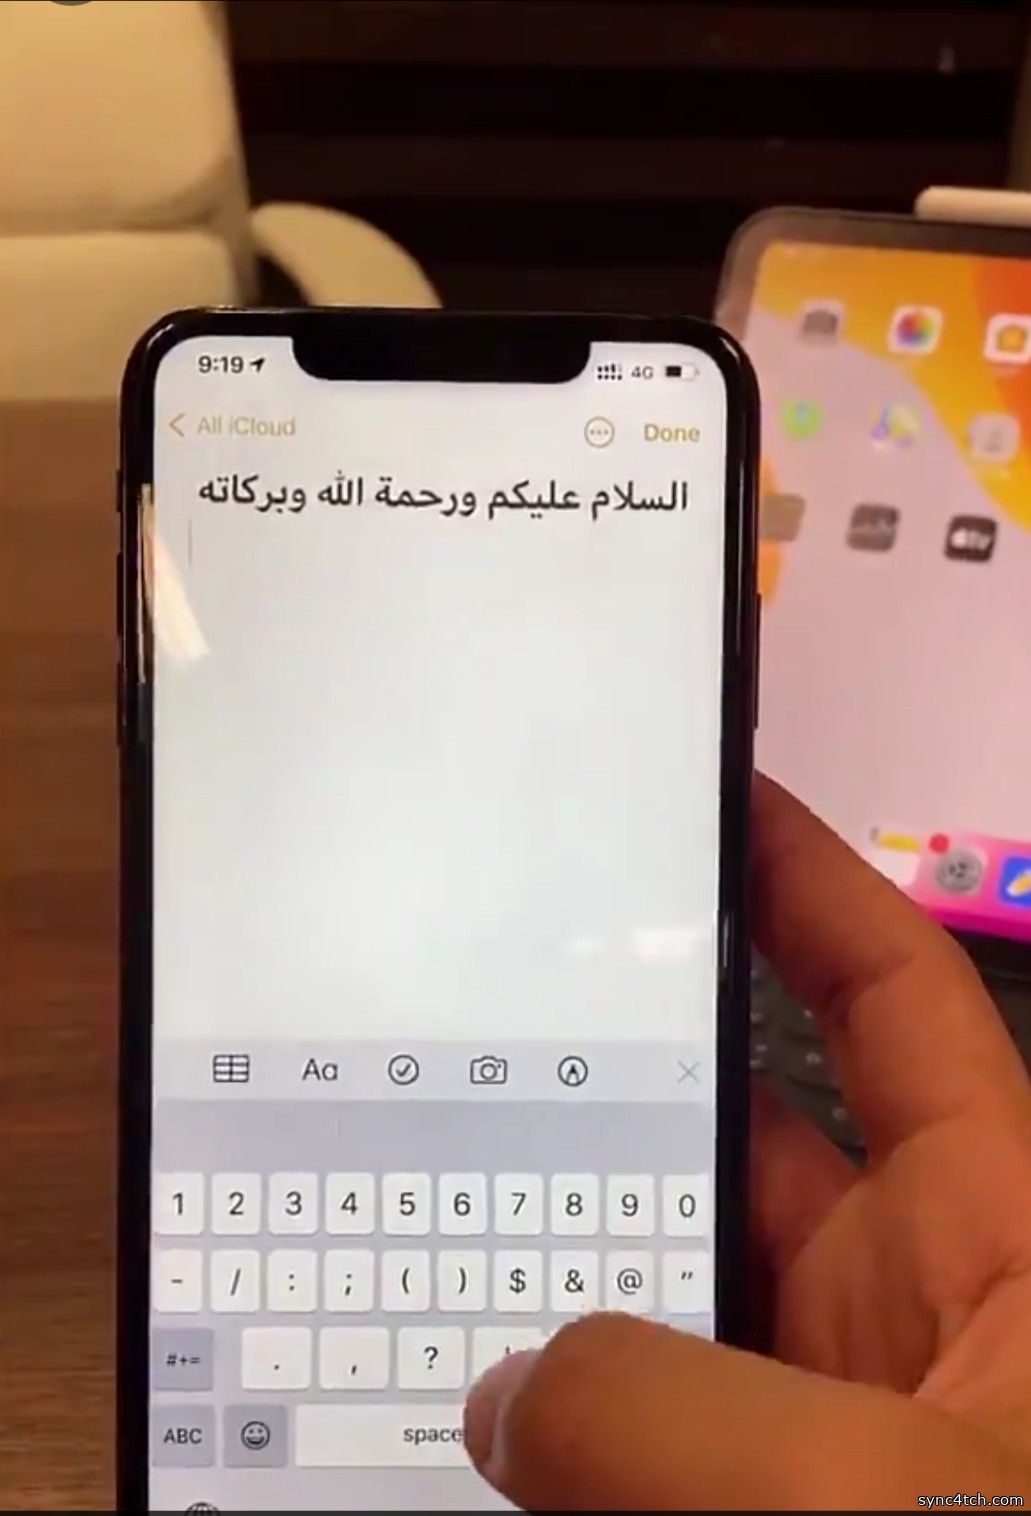 طريقة سهلة تستخدمها لتفعيل الأرقام العربية الي"الإنجليزية" في لوحة المفاتيح العربية